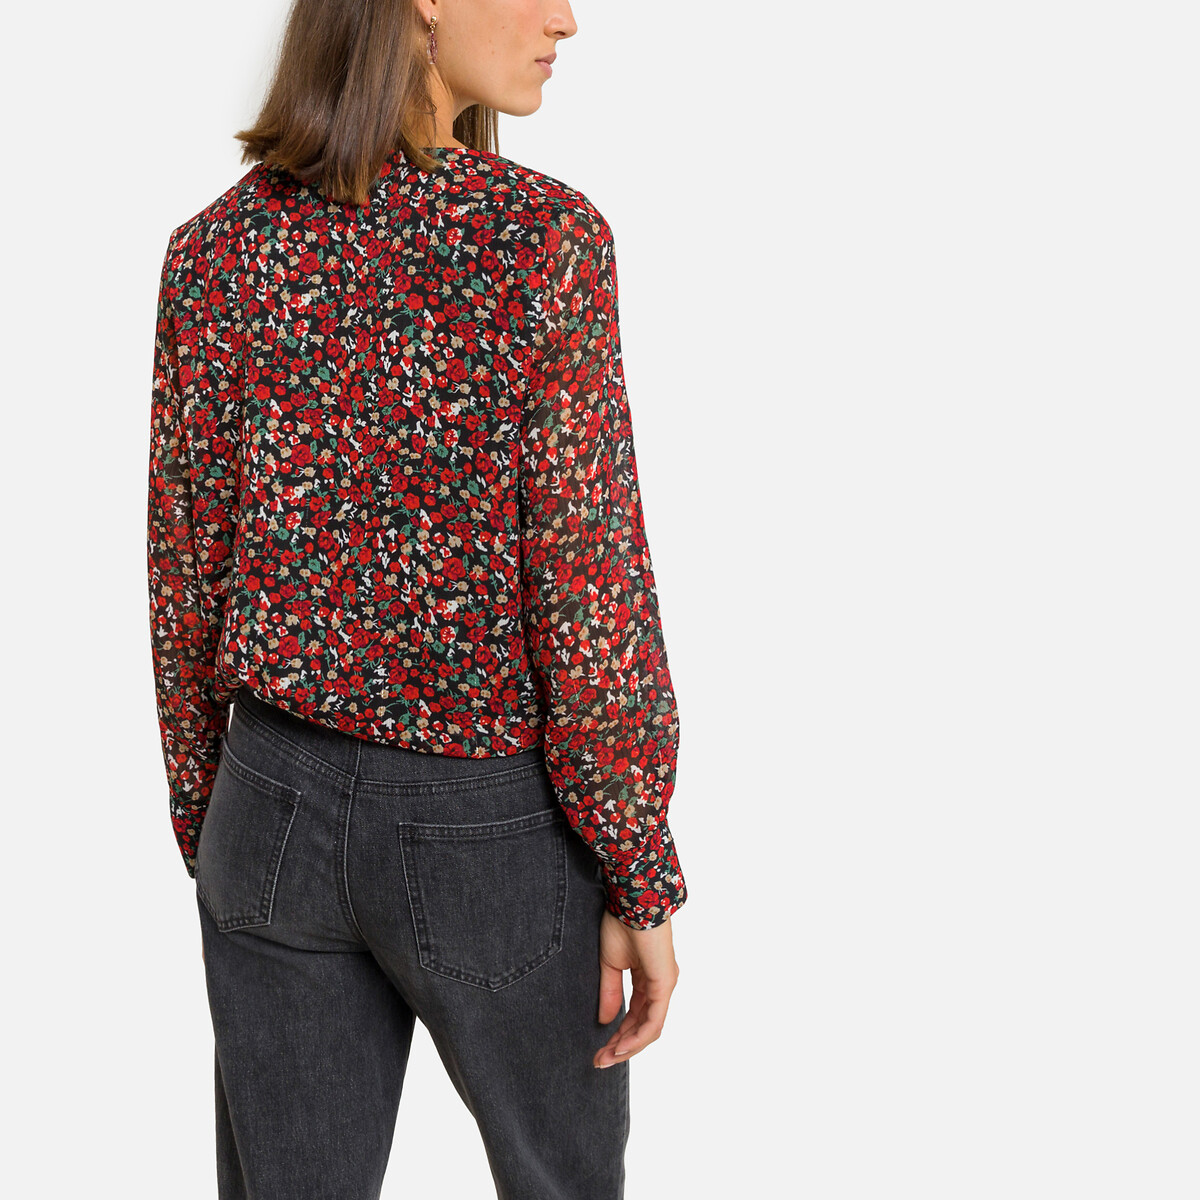 Блузка ONLY Блузка С цветочным принтом и V-образным вырезом XS черный, размер XS - фото 4